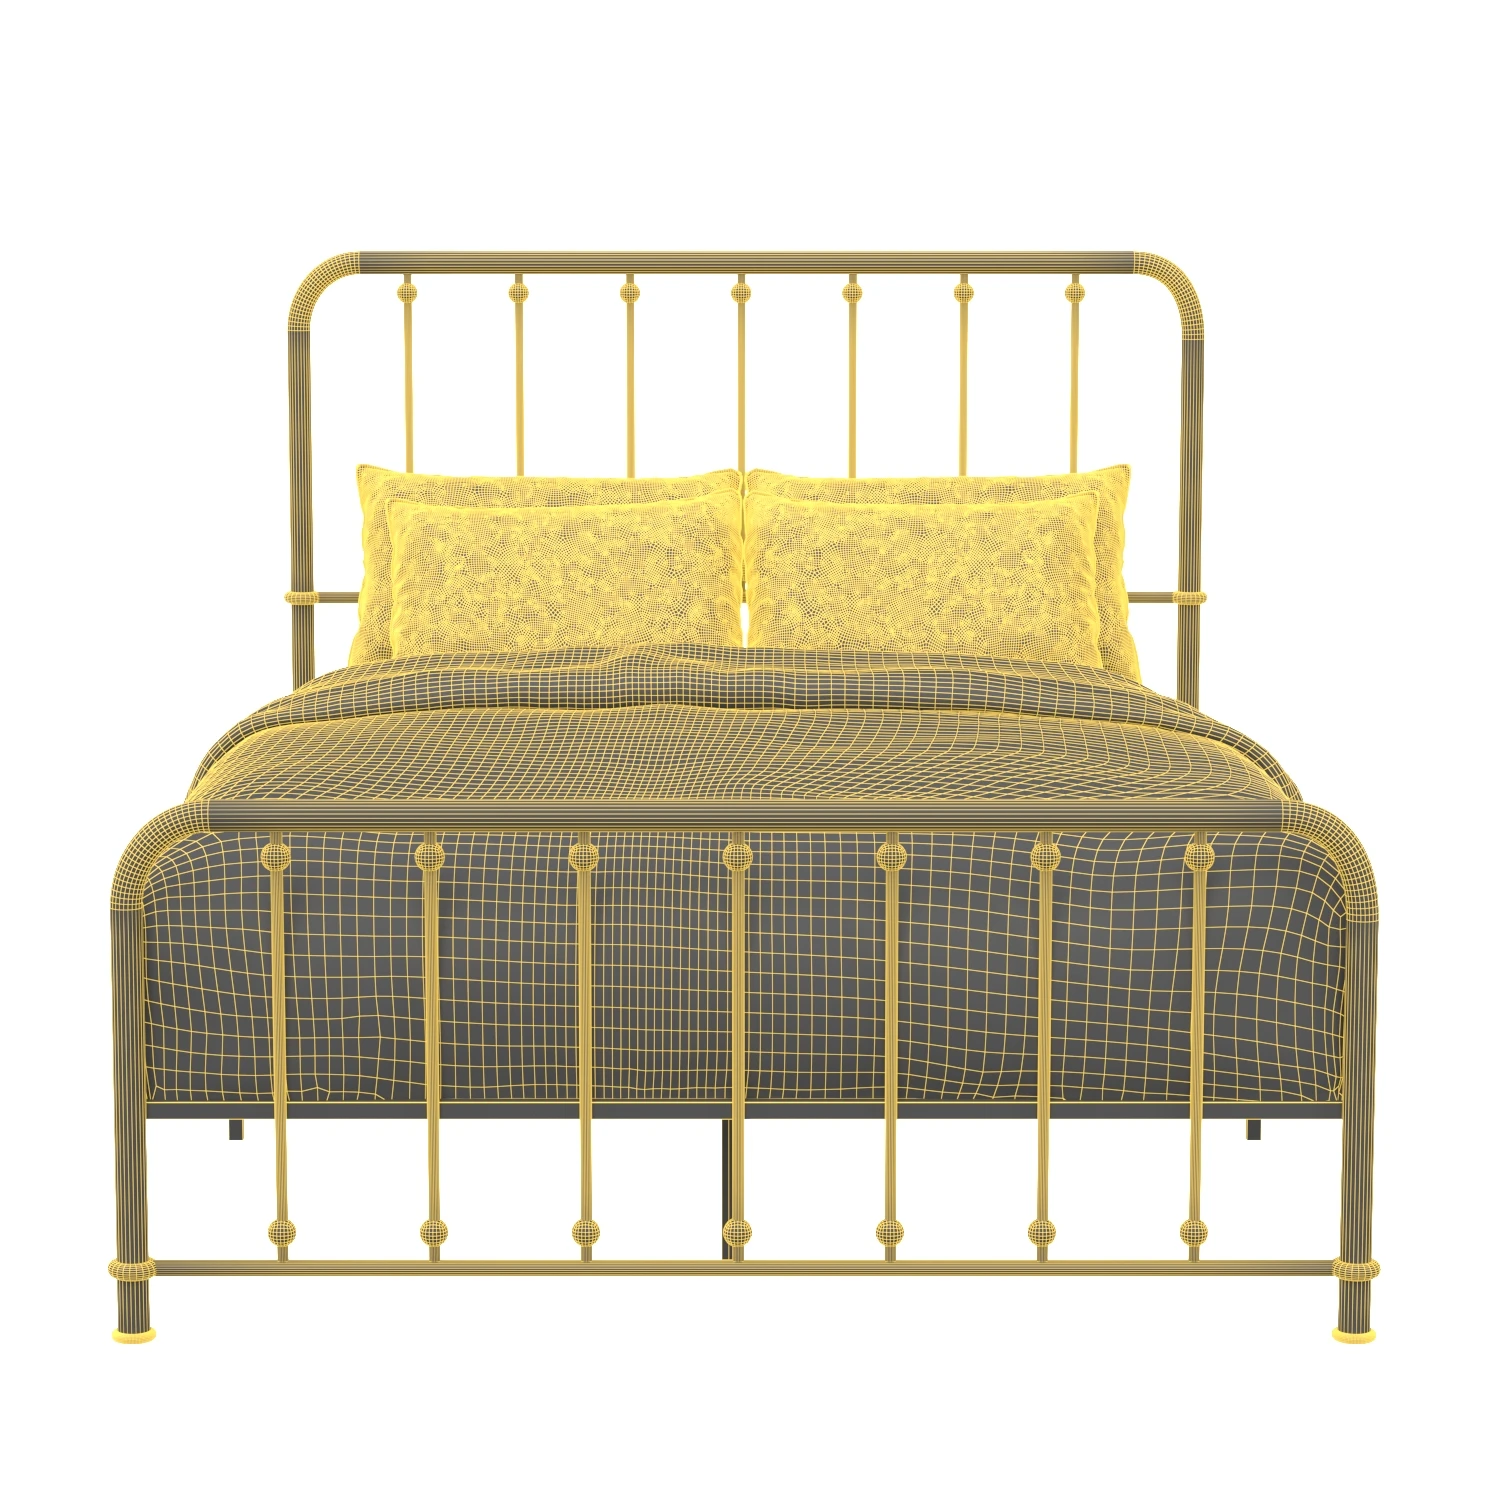 Homelegance Bed Collection 01 3D Model_08